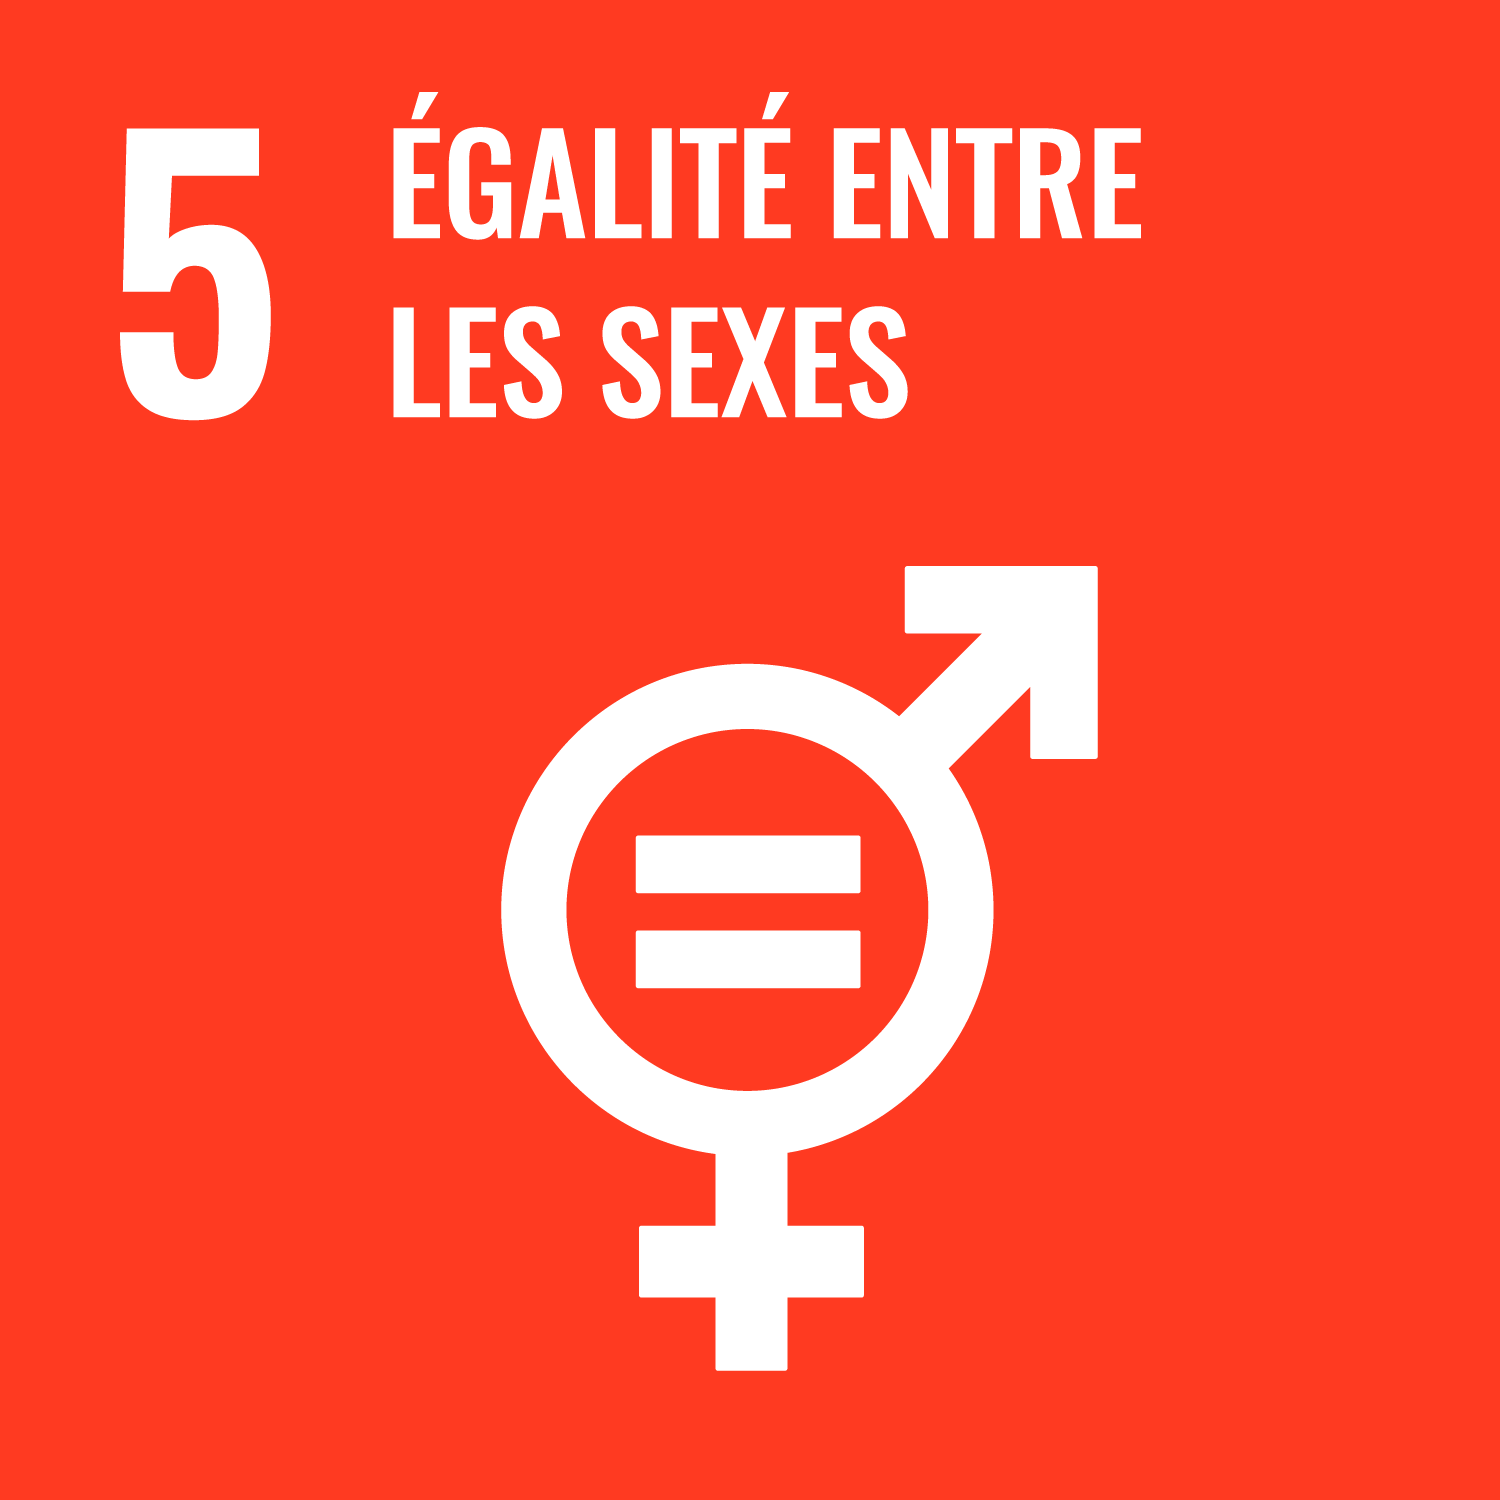 Objectif 5 - égalité entre les sexes